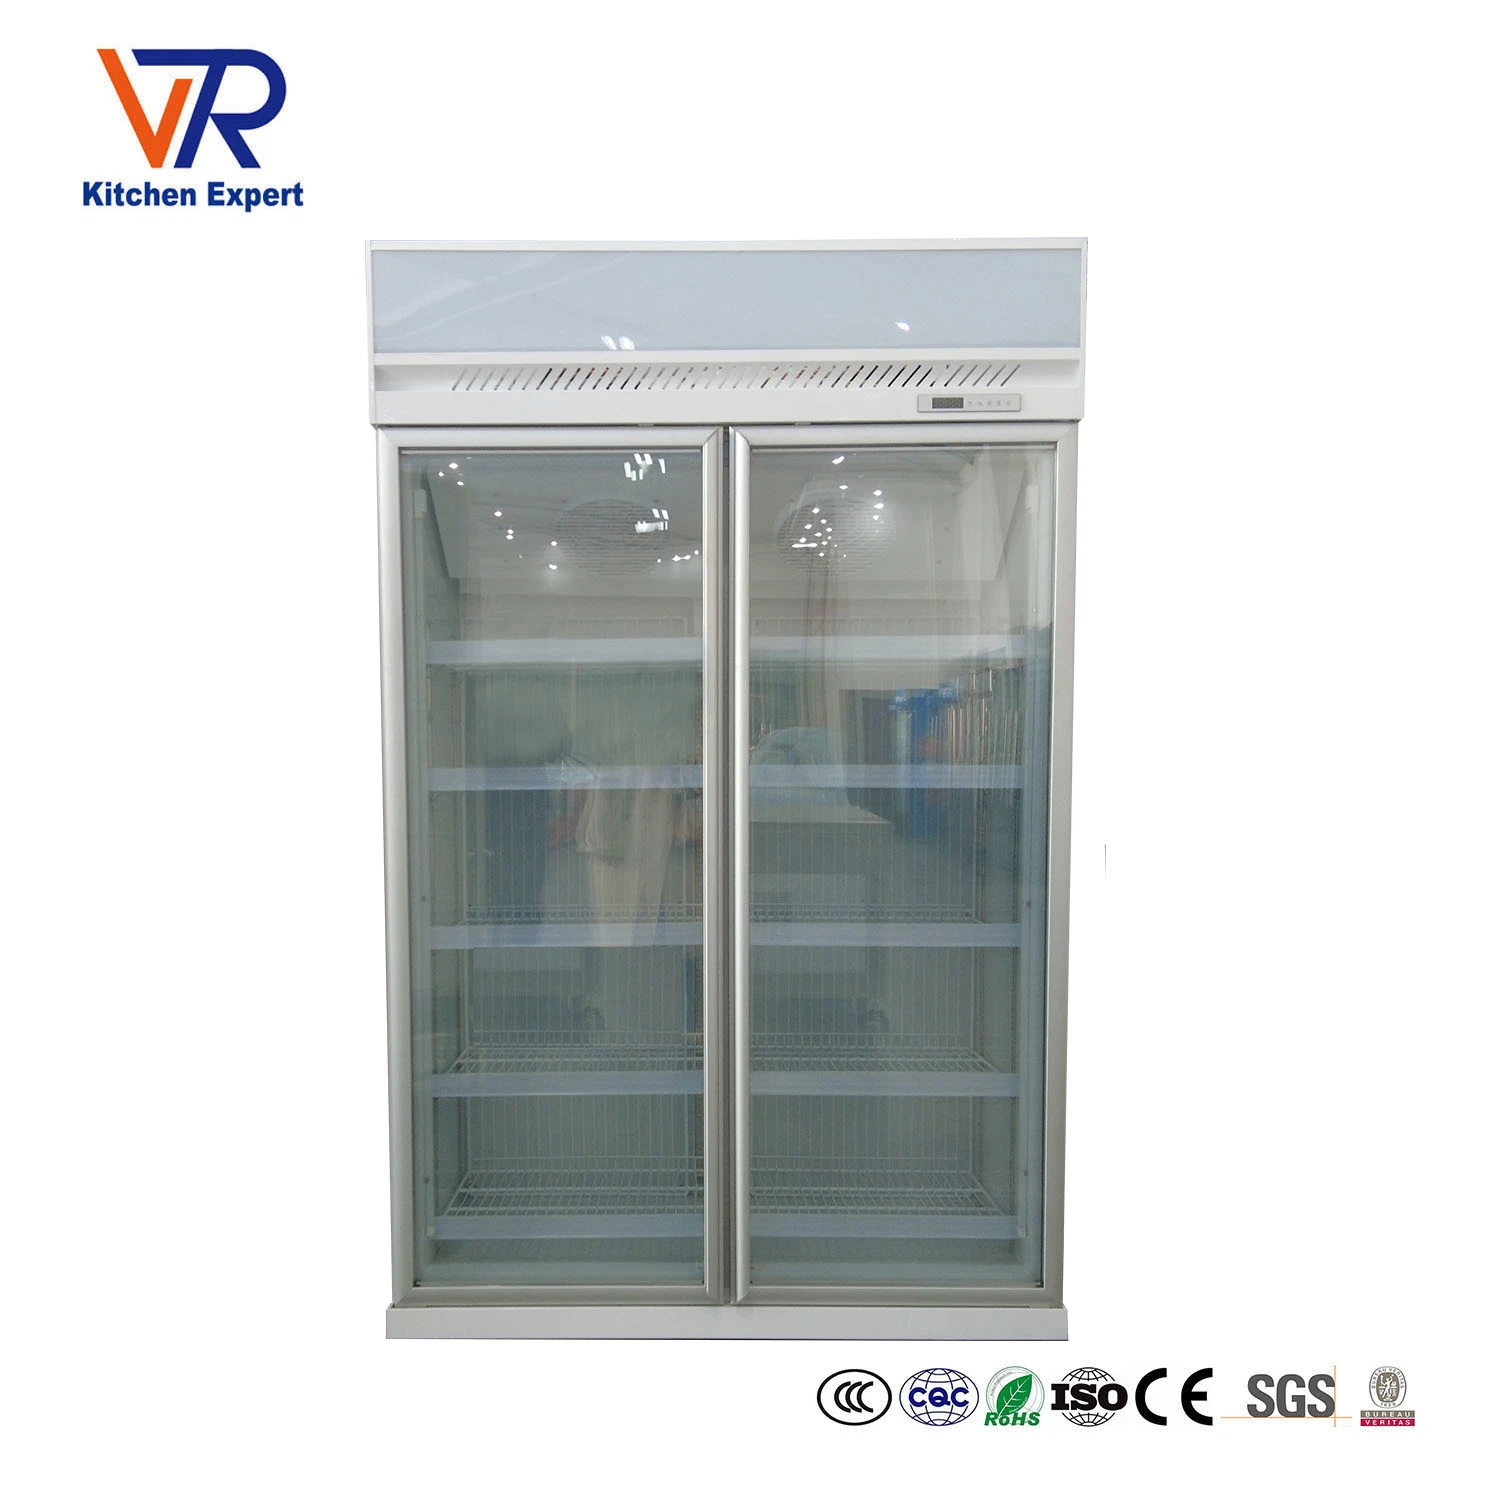 Supermarket Commercial Glass Double Door Vertical Display Freezer Refrigerator National for Beverage Beer Milk Coke Cooler